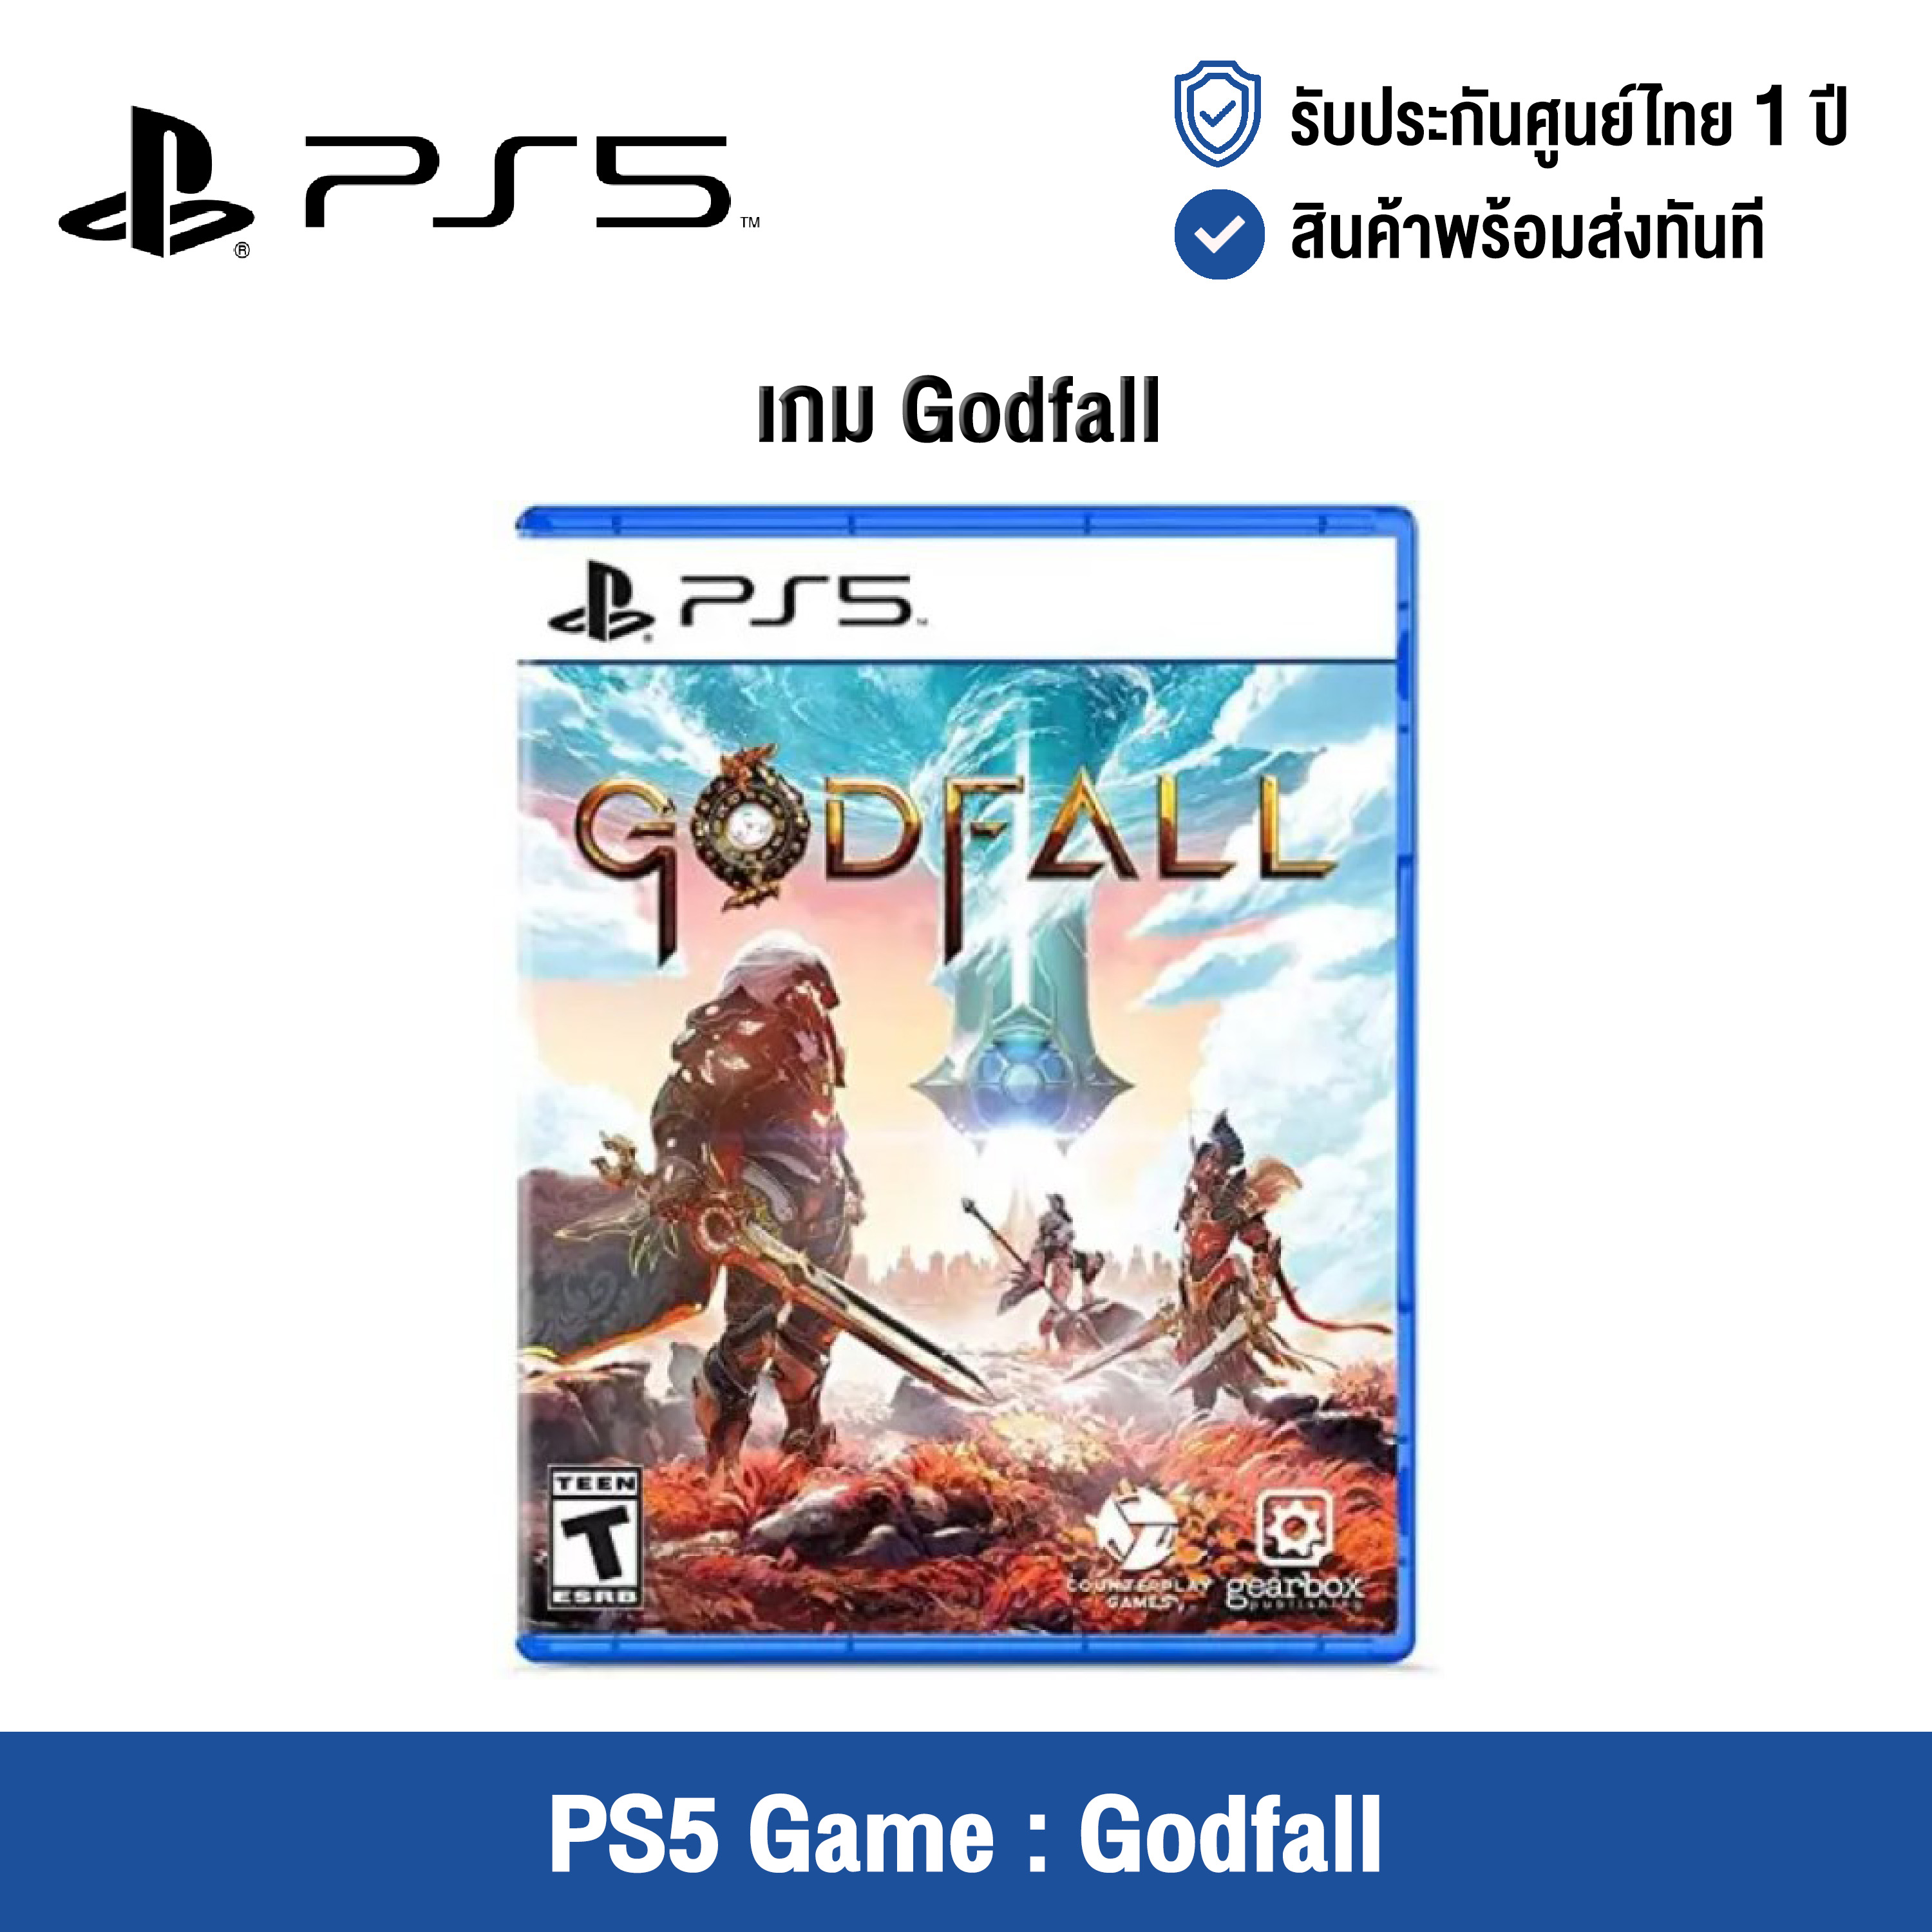 [ศูนย์ไทย] PS5 Game : Godfall - แผ่นเกมส์ Godfall (English Version)